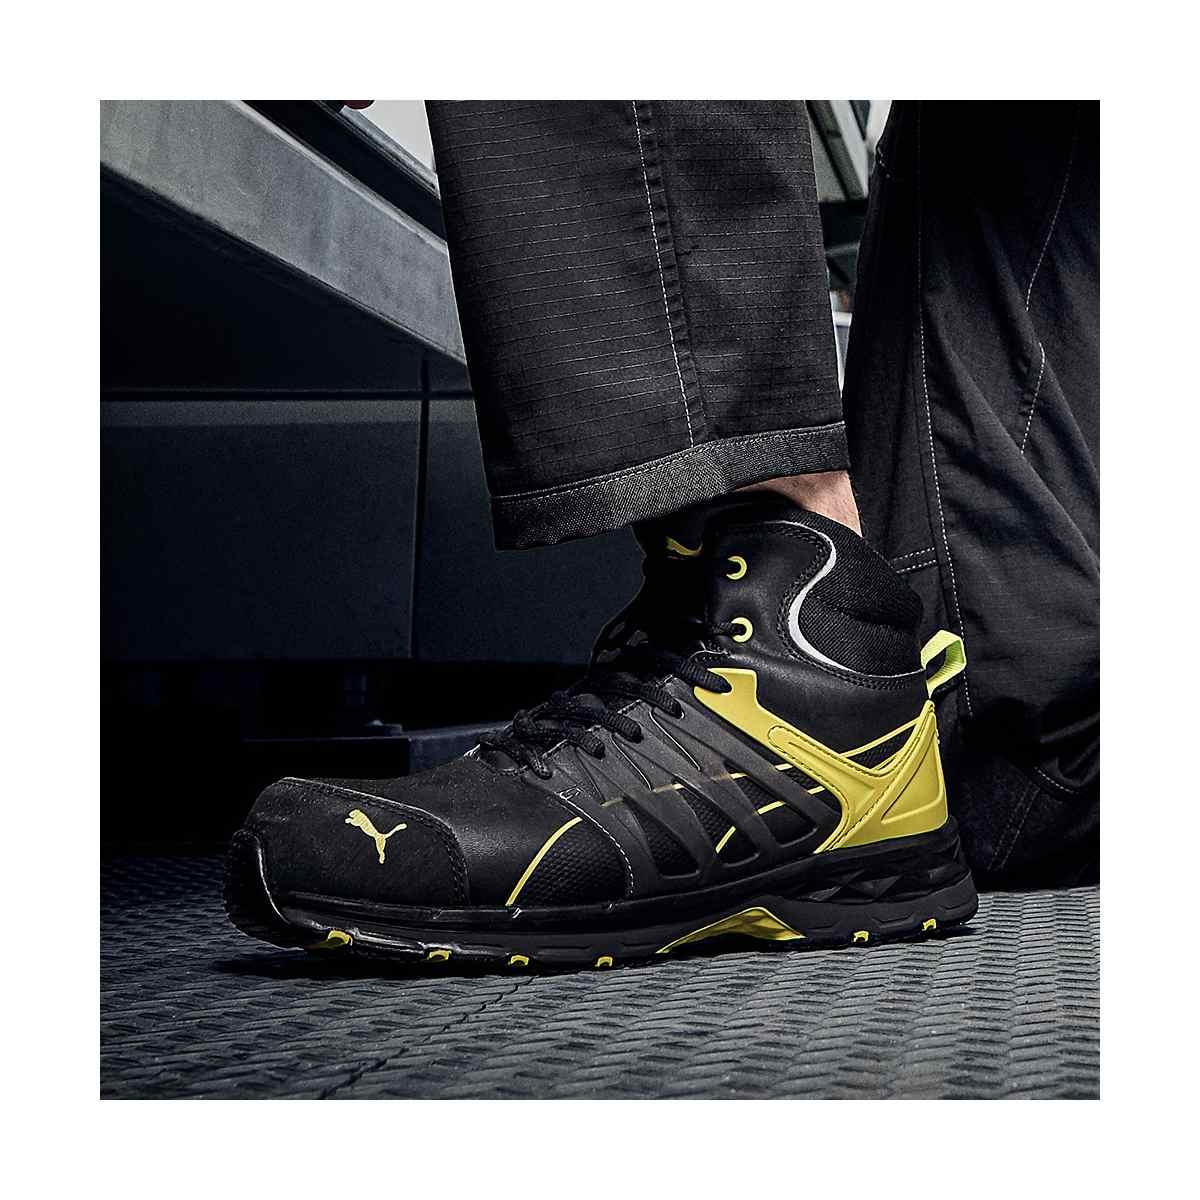 Puma scarpe antinfortunistica velocity 2.0 alta nero/giallo s3 esd hro src